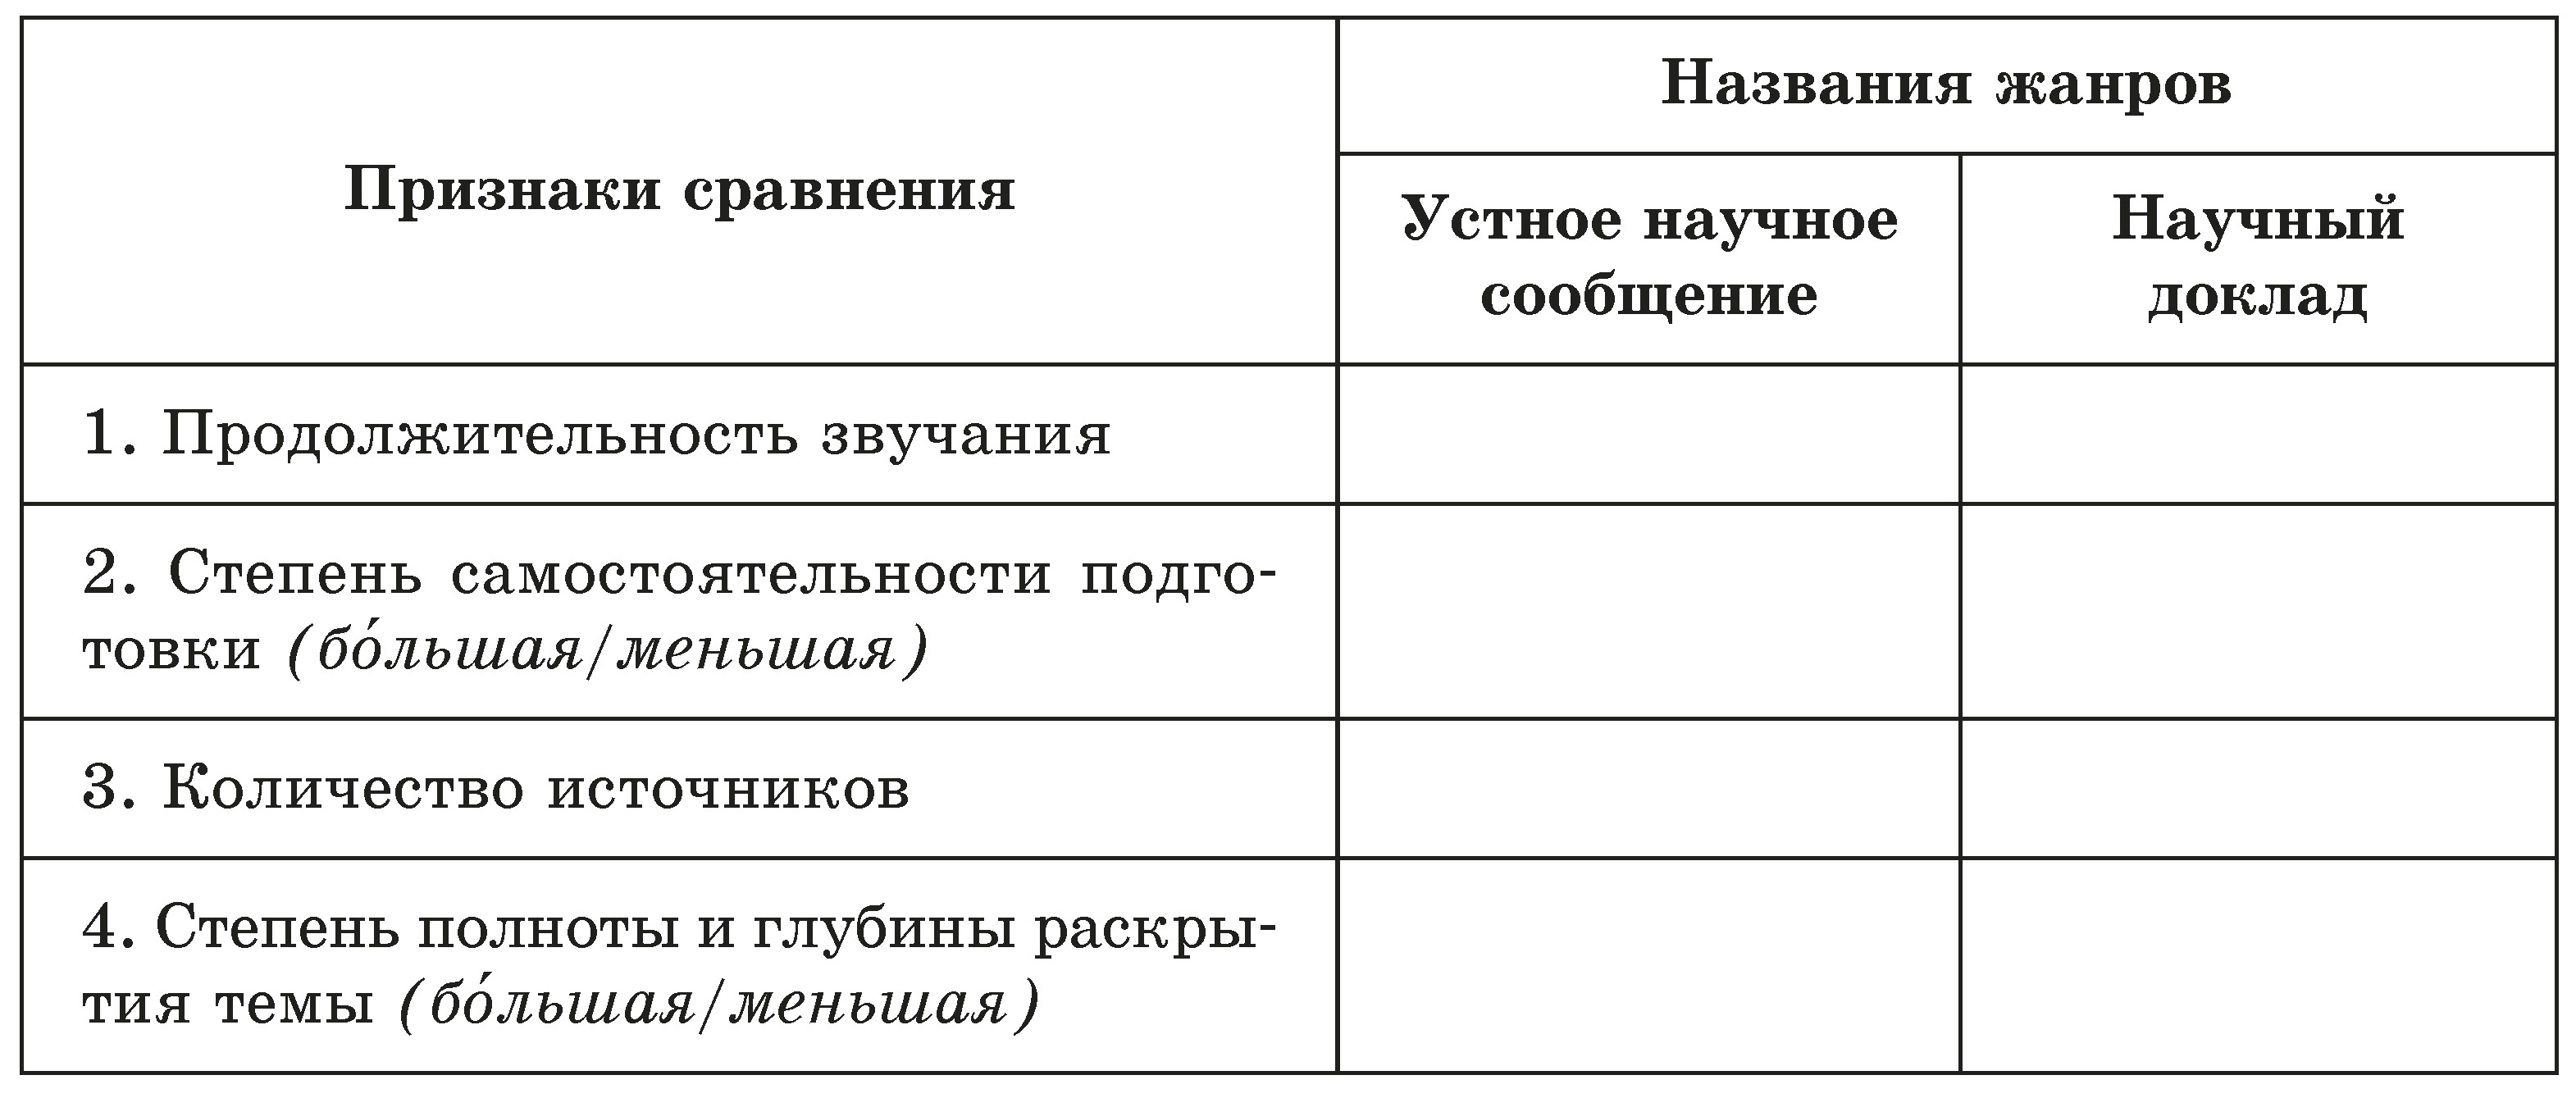 Реферат: Омонимия в русском языке